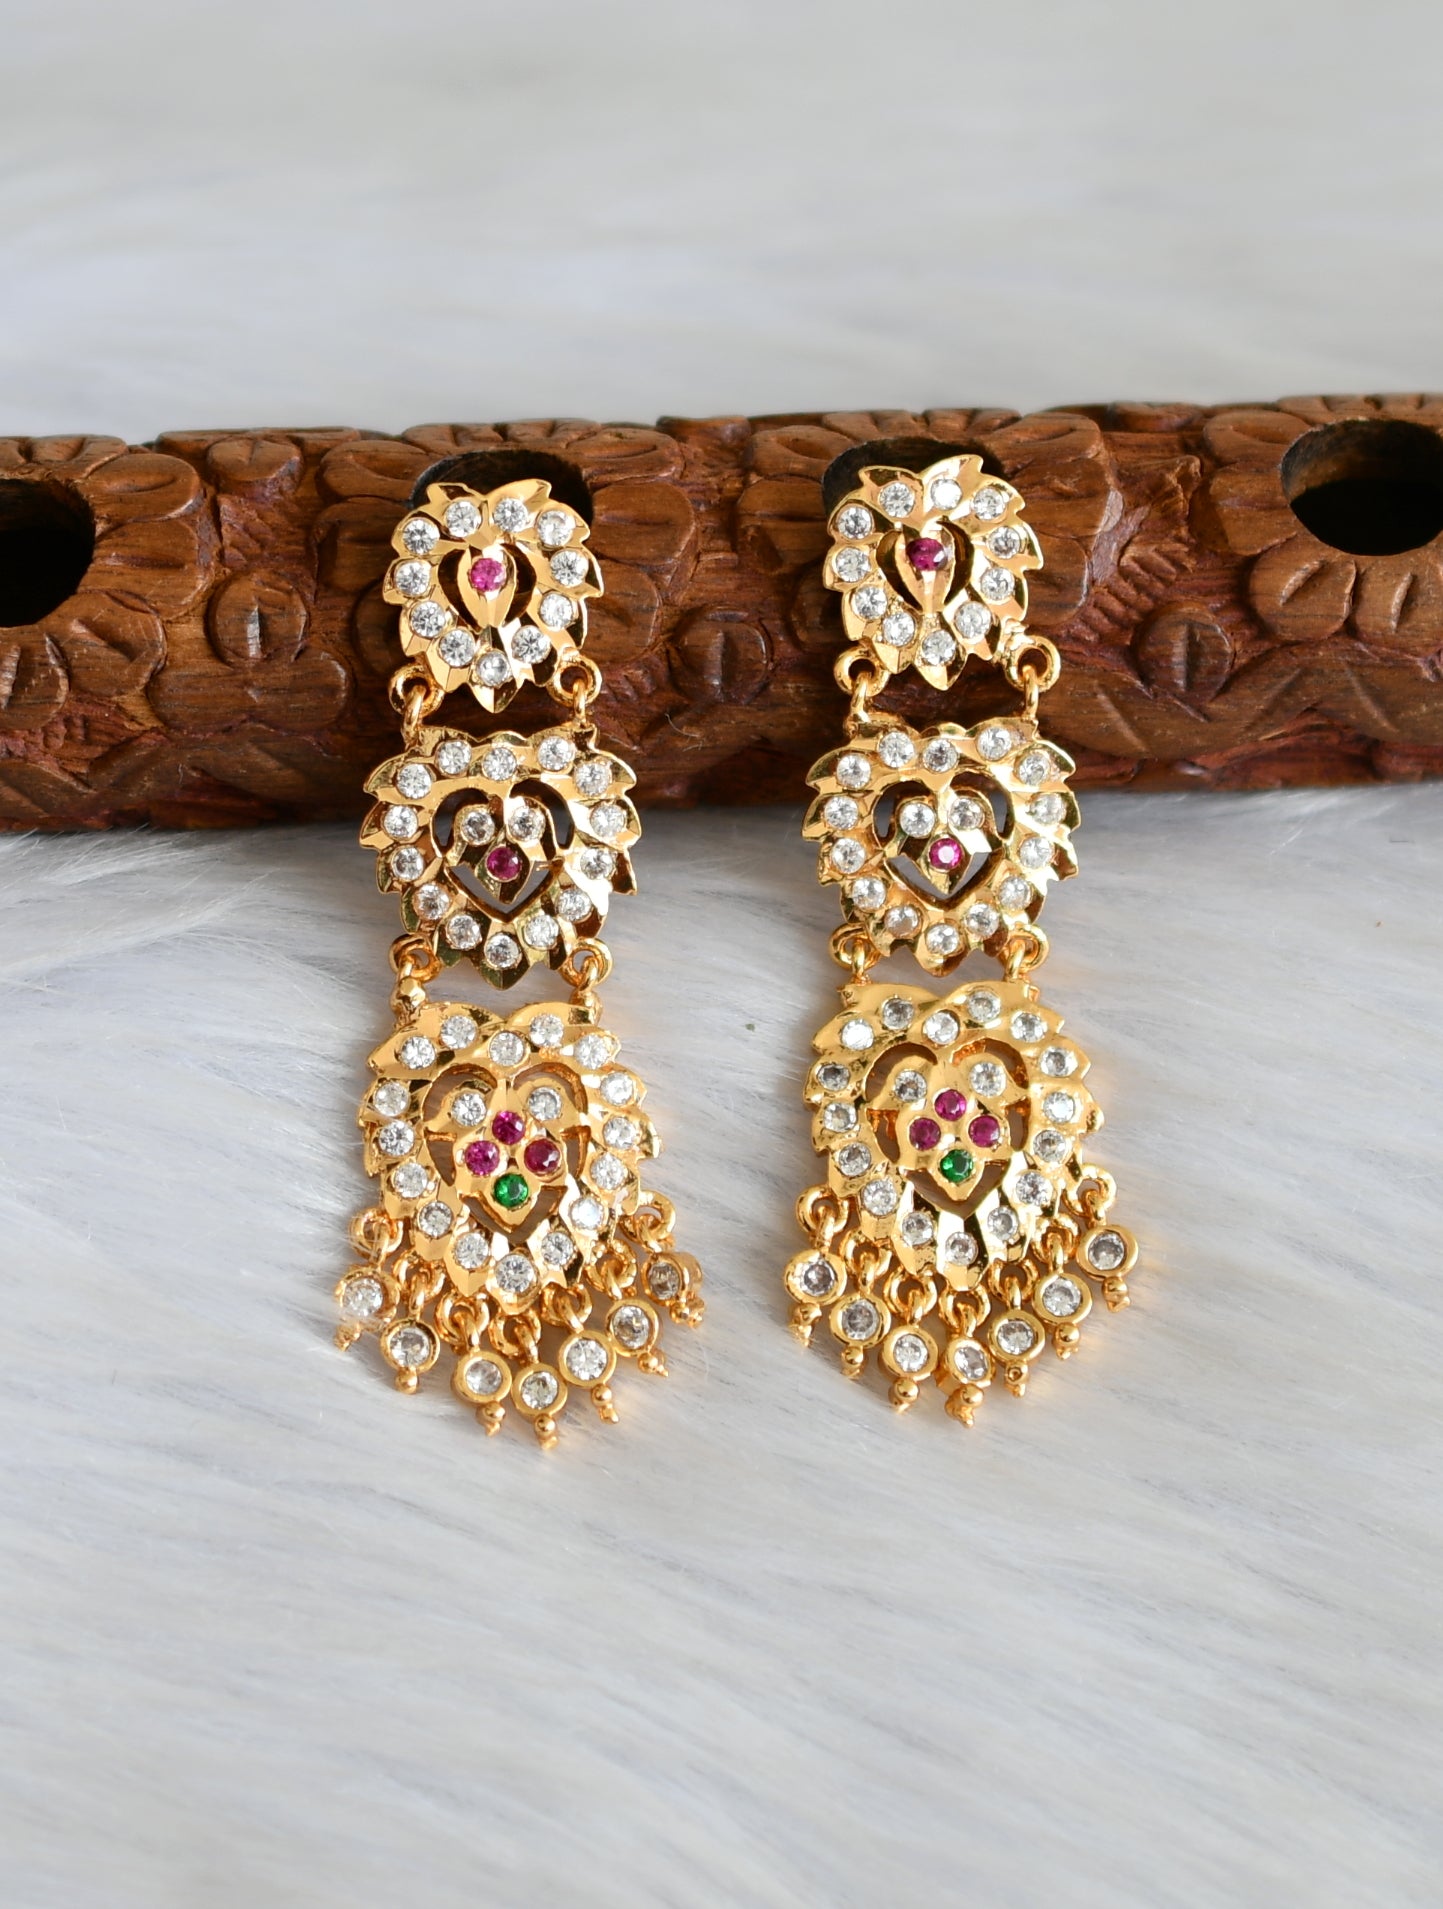 Rajputi jewellery earings by Kuldeep Singh | Rajputi jewellery, Rajput  jewellery, Royal jewelry